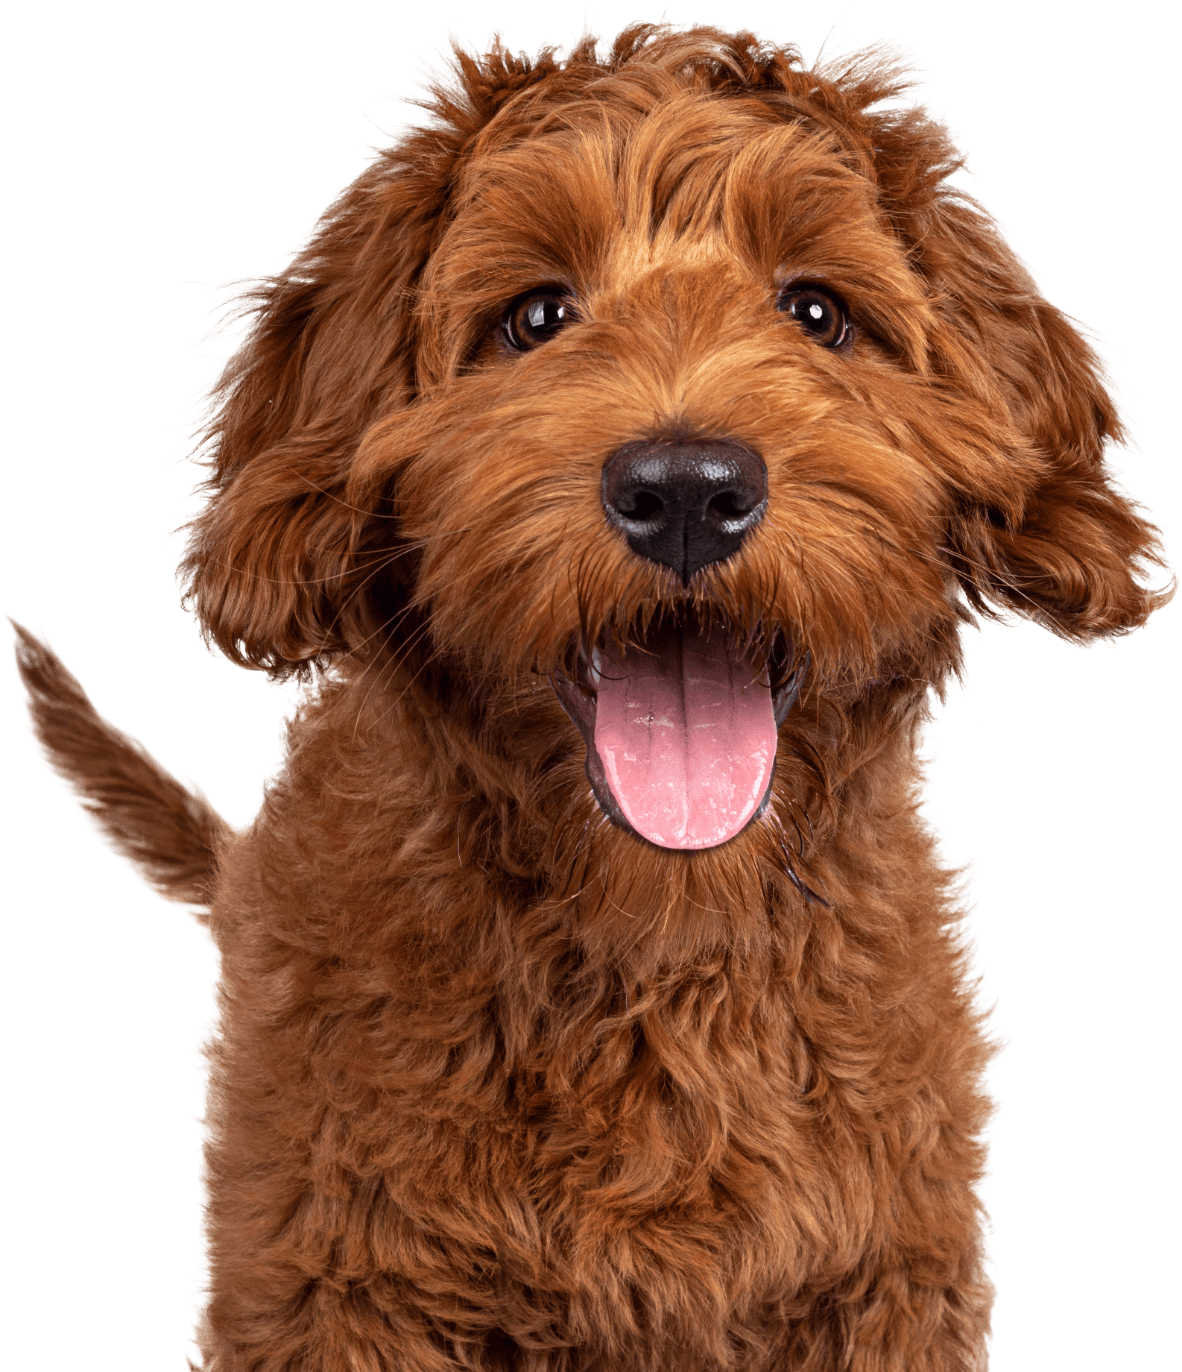 a shaggy brownish orange dog looking happy